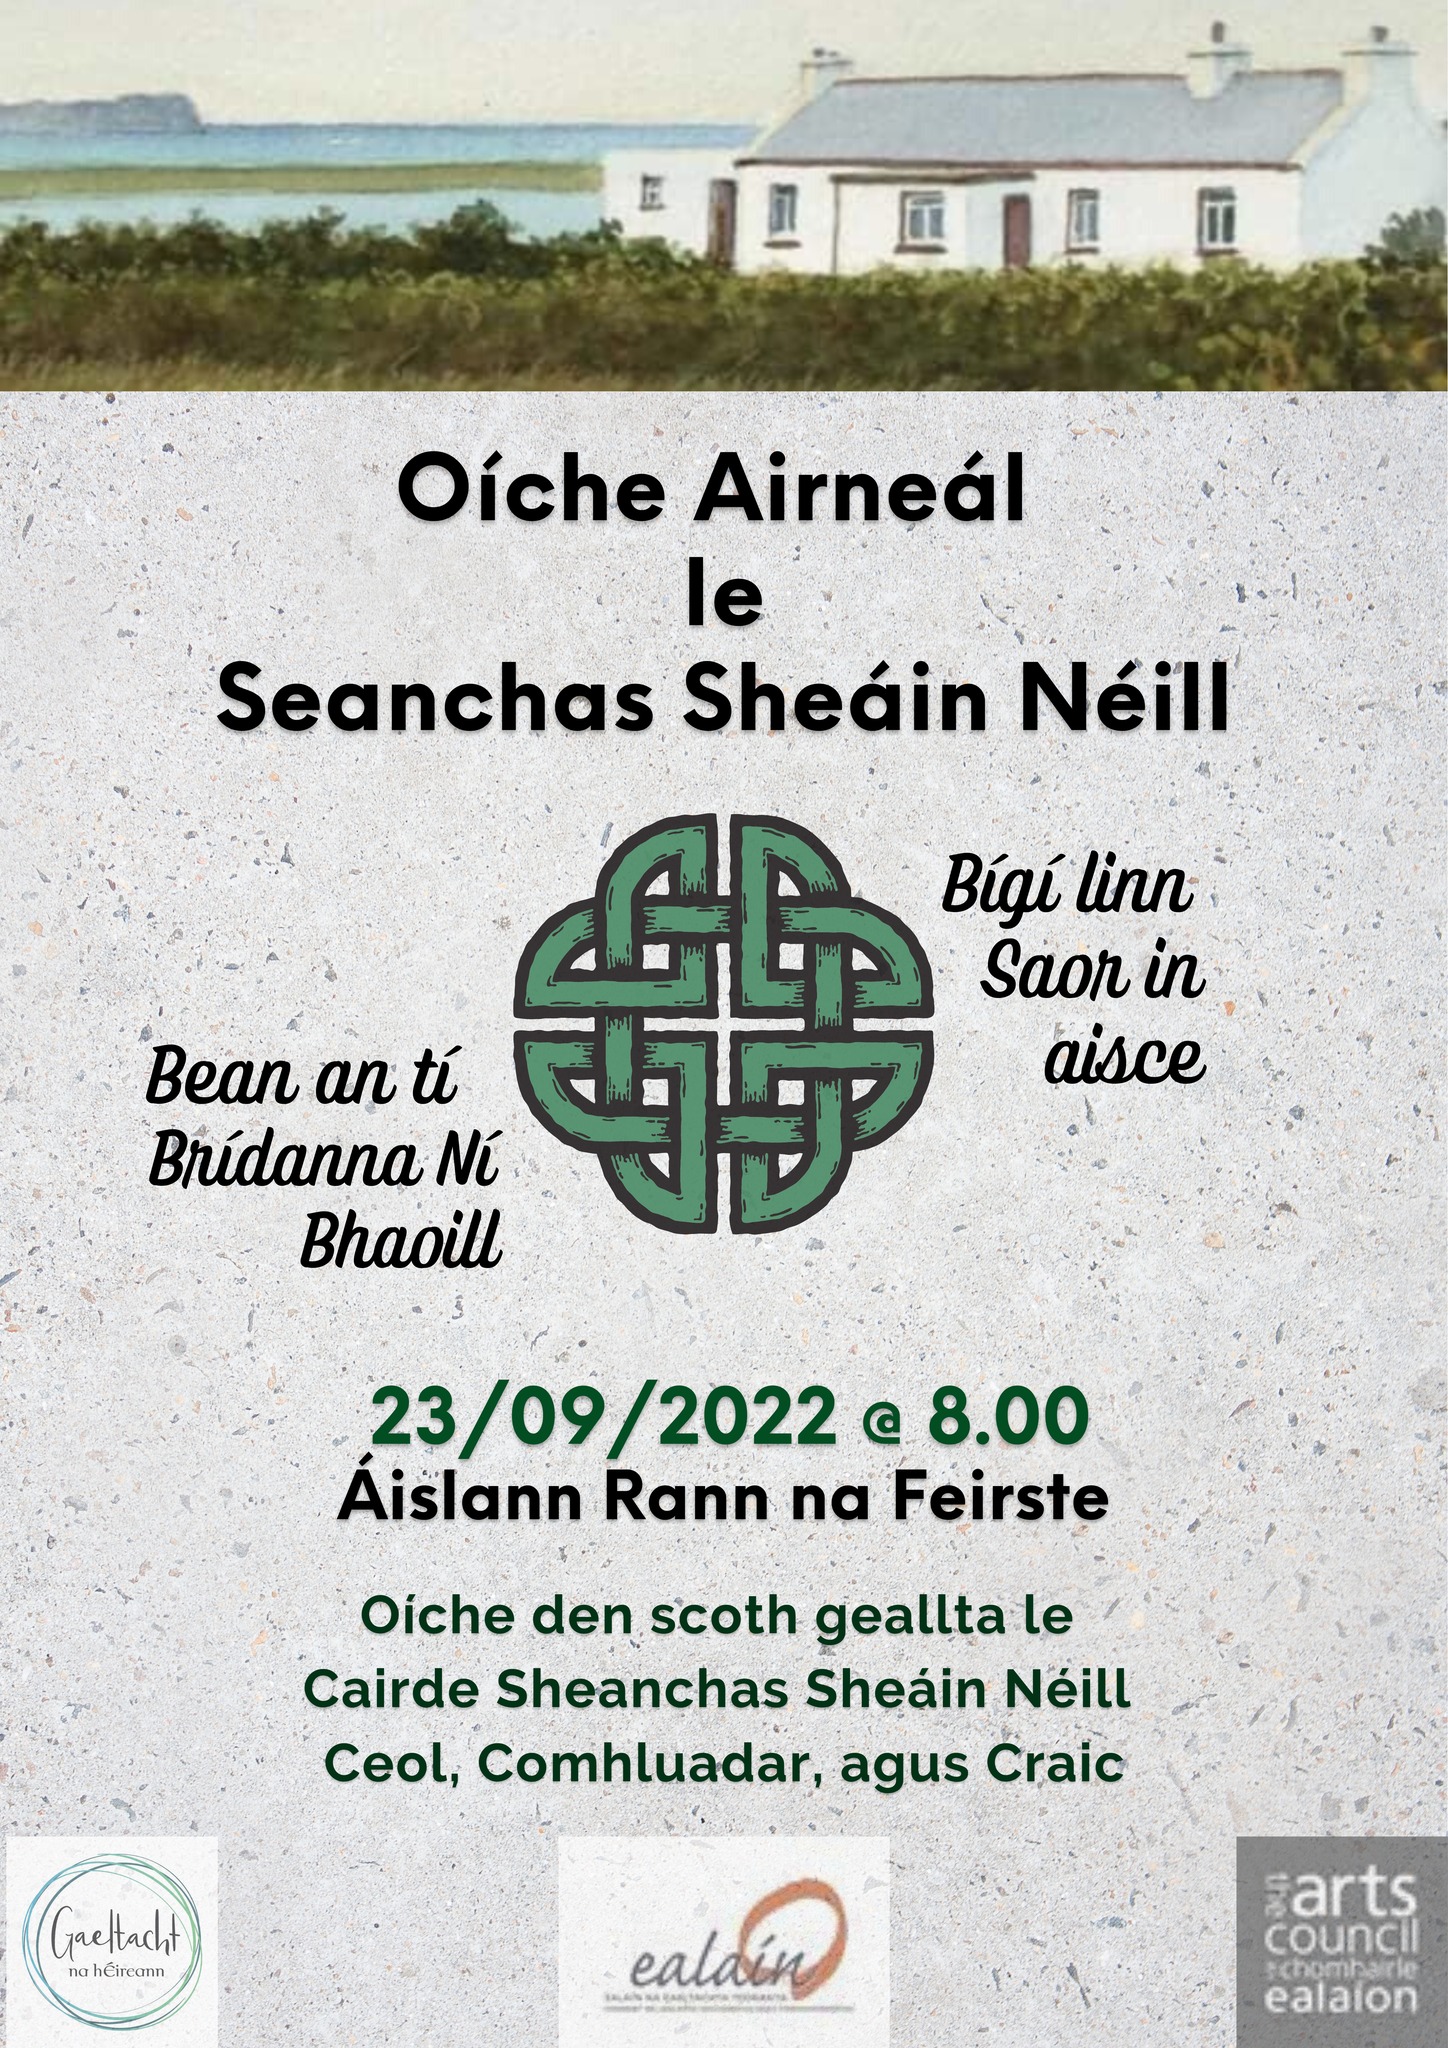 Oíche Airneál le Seanchas Sheáin Néill